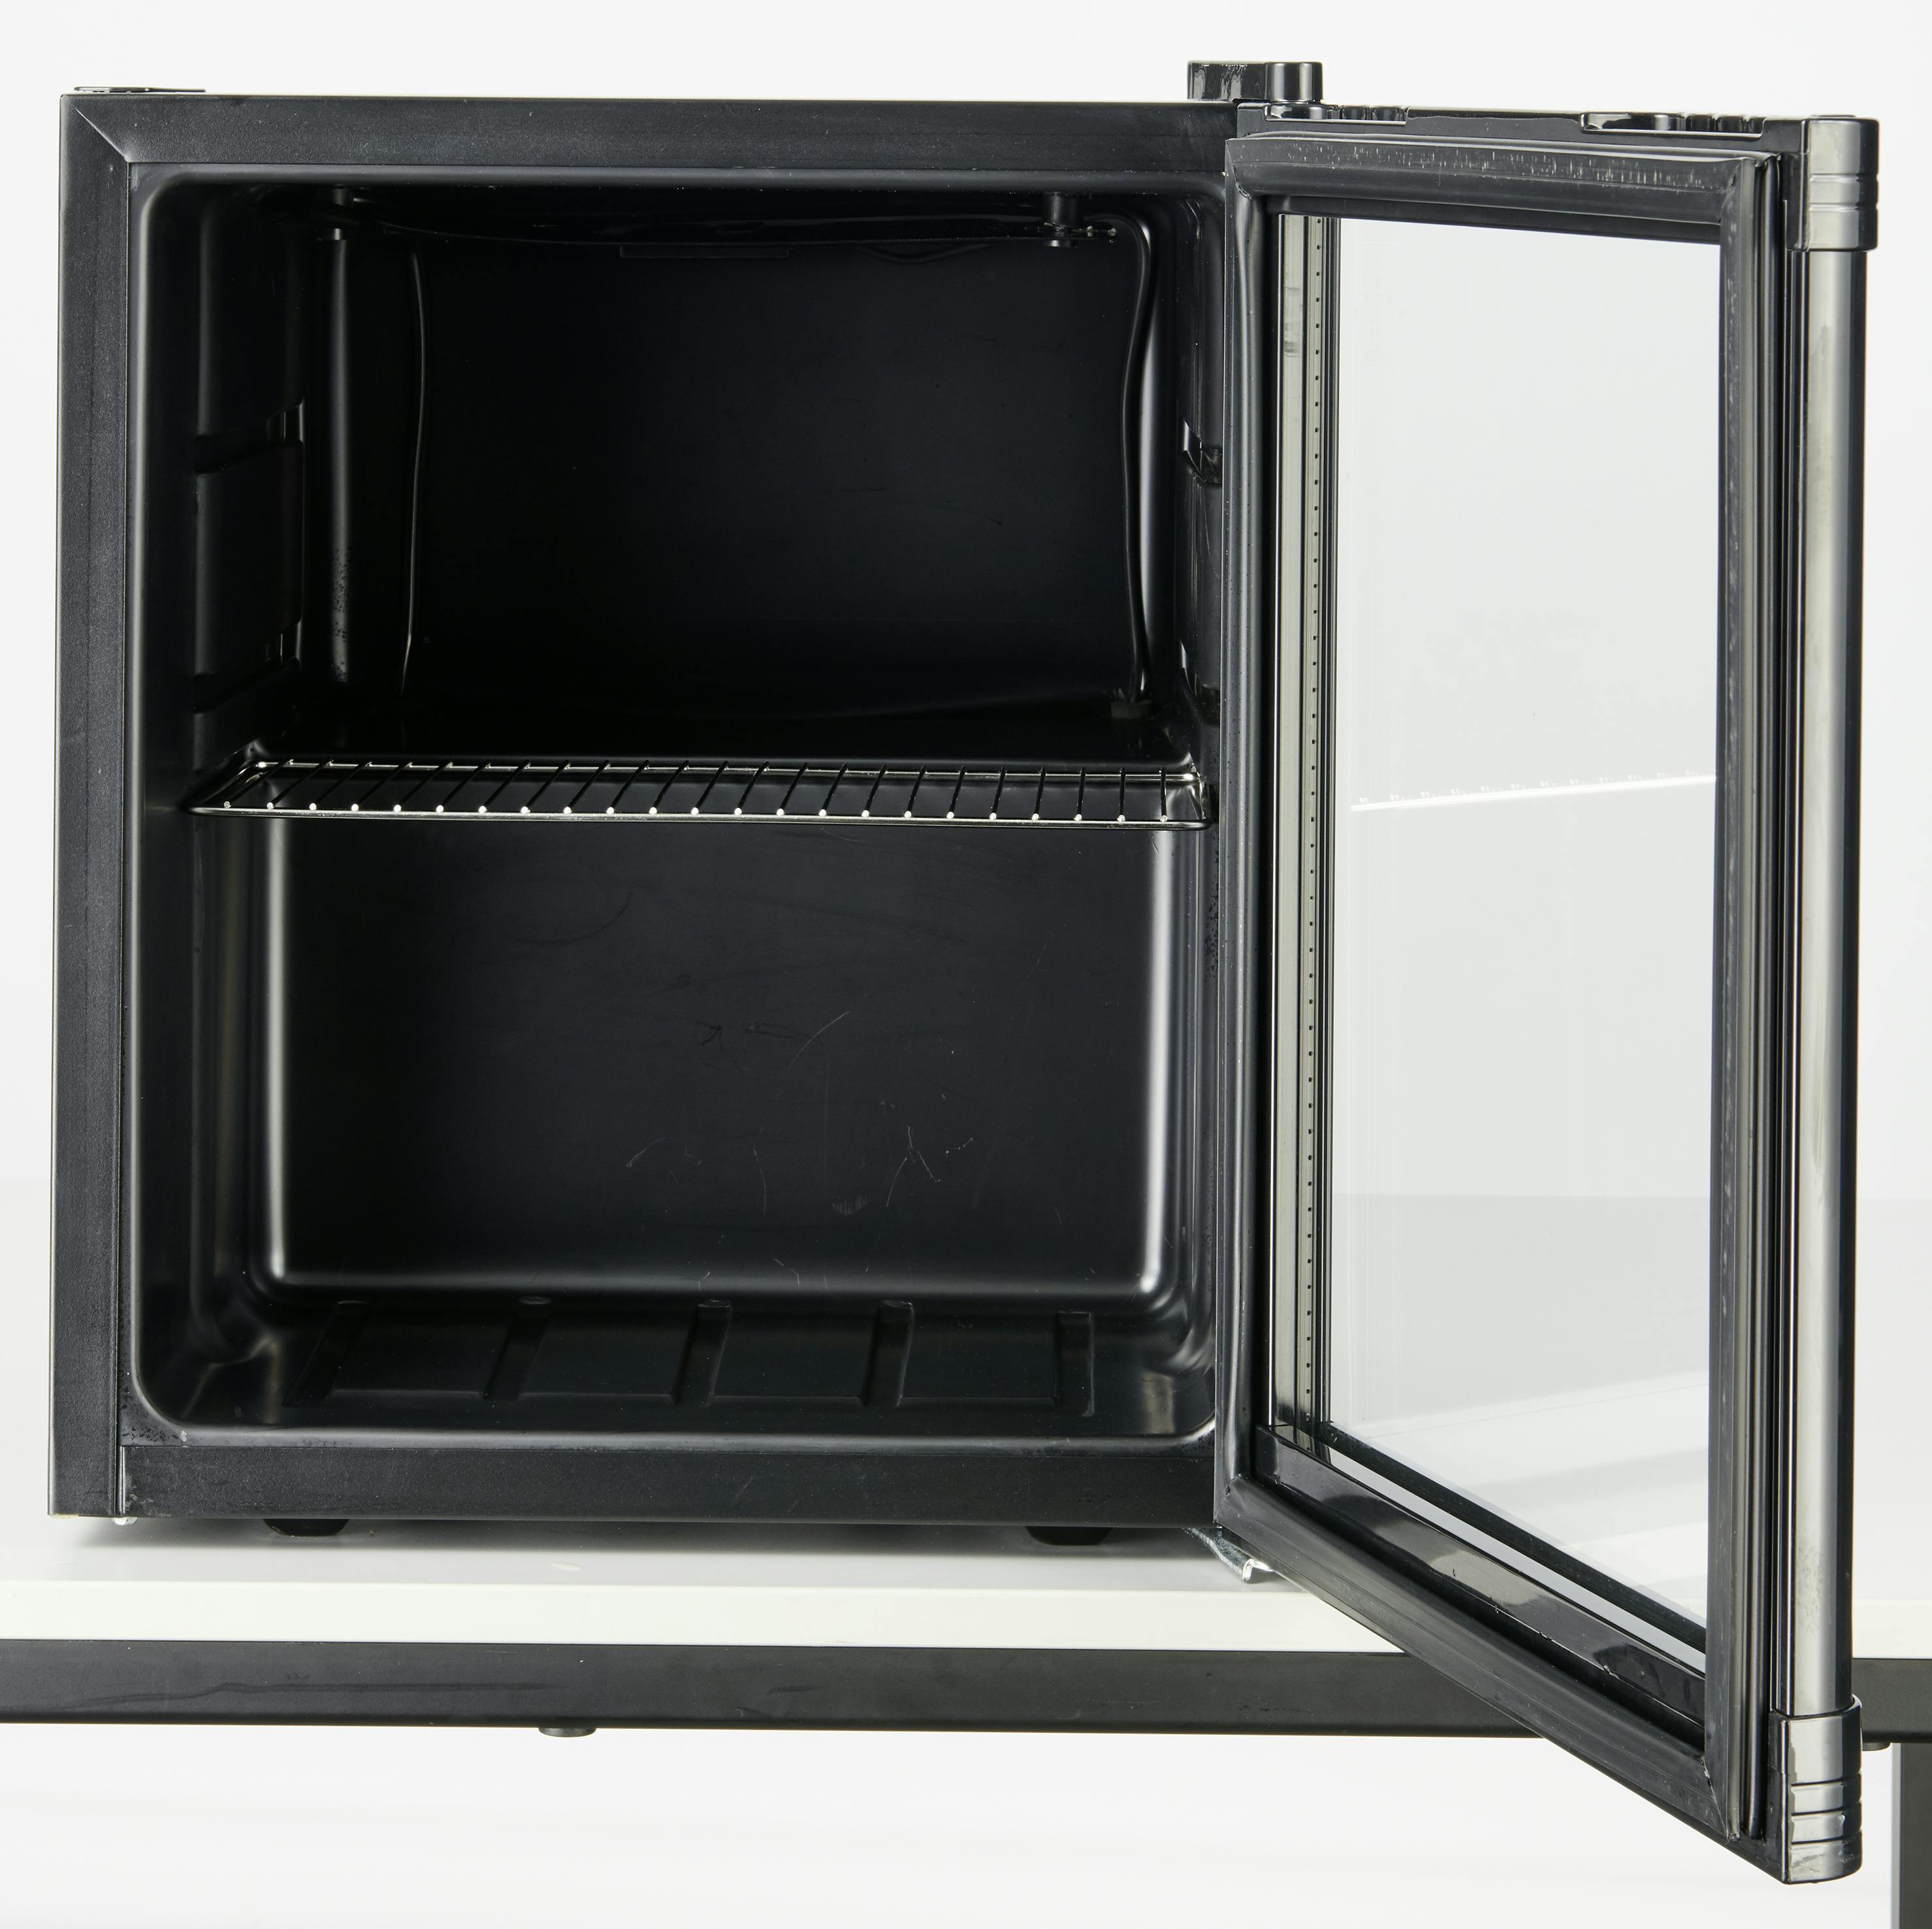 Mini-Kühlschrank mit Gefrierfach BERGEN 46L kompakt und praktisch